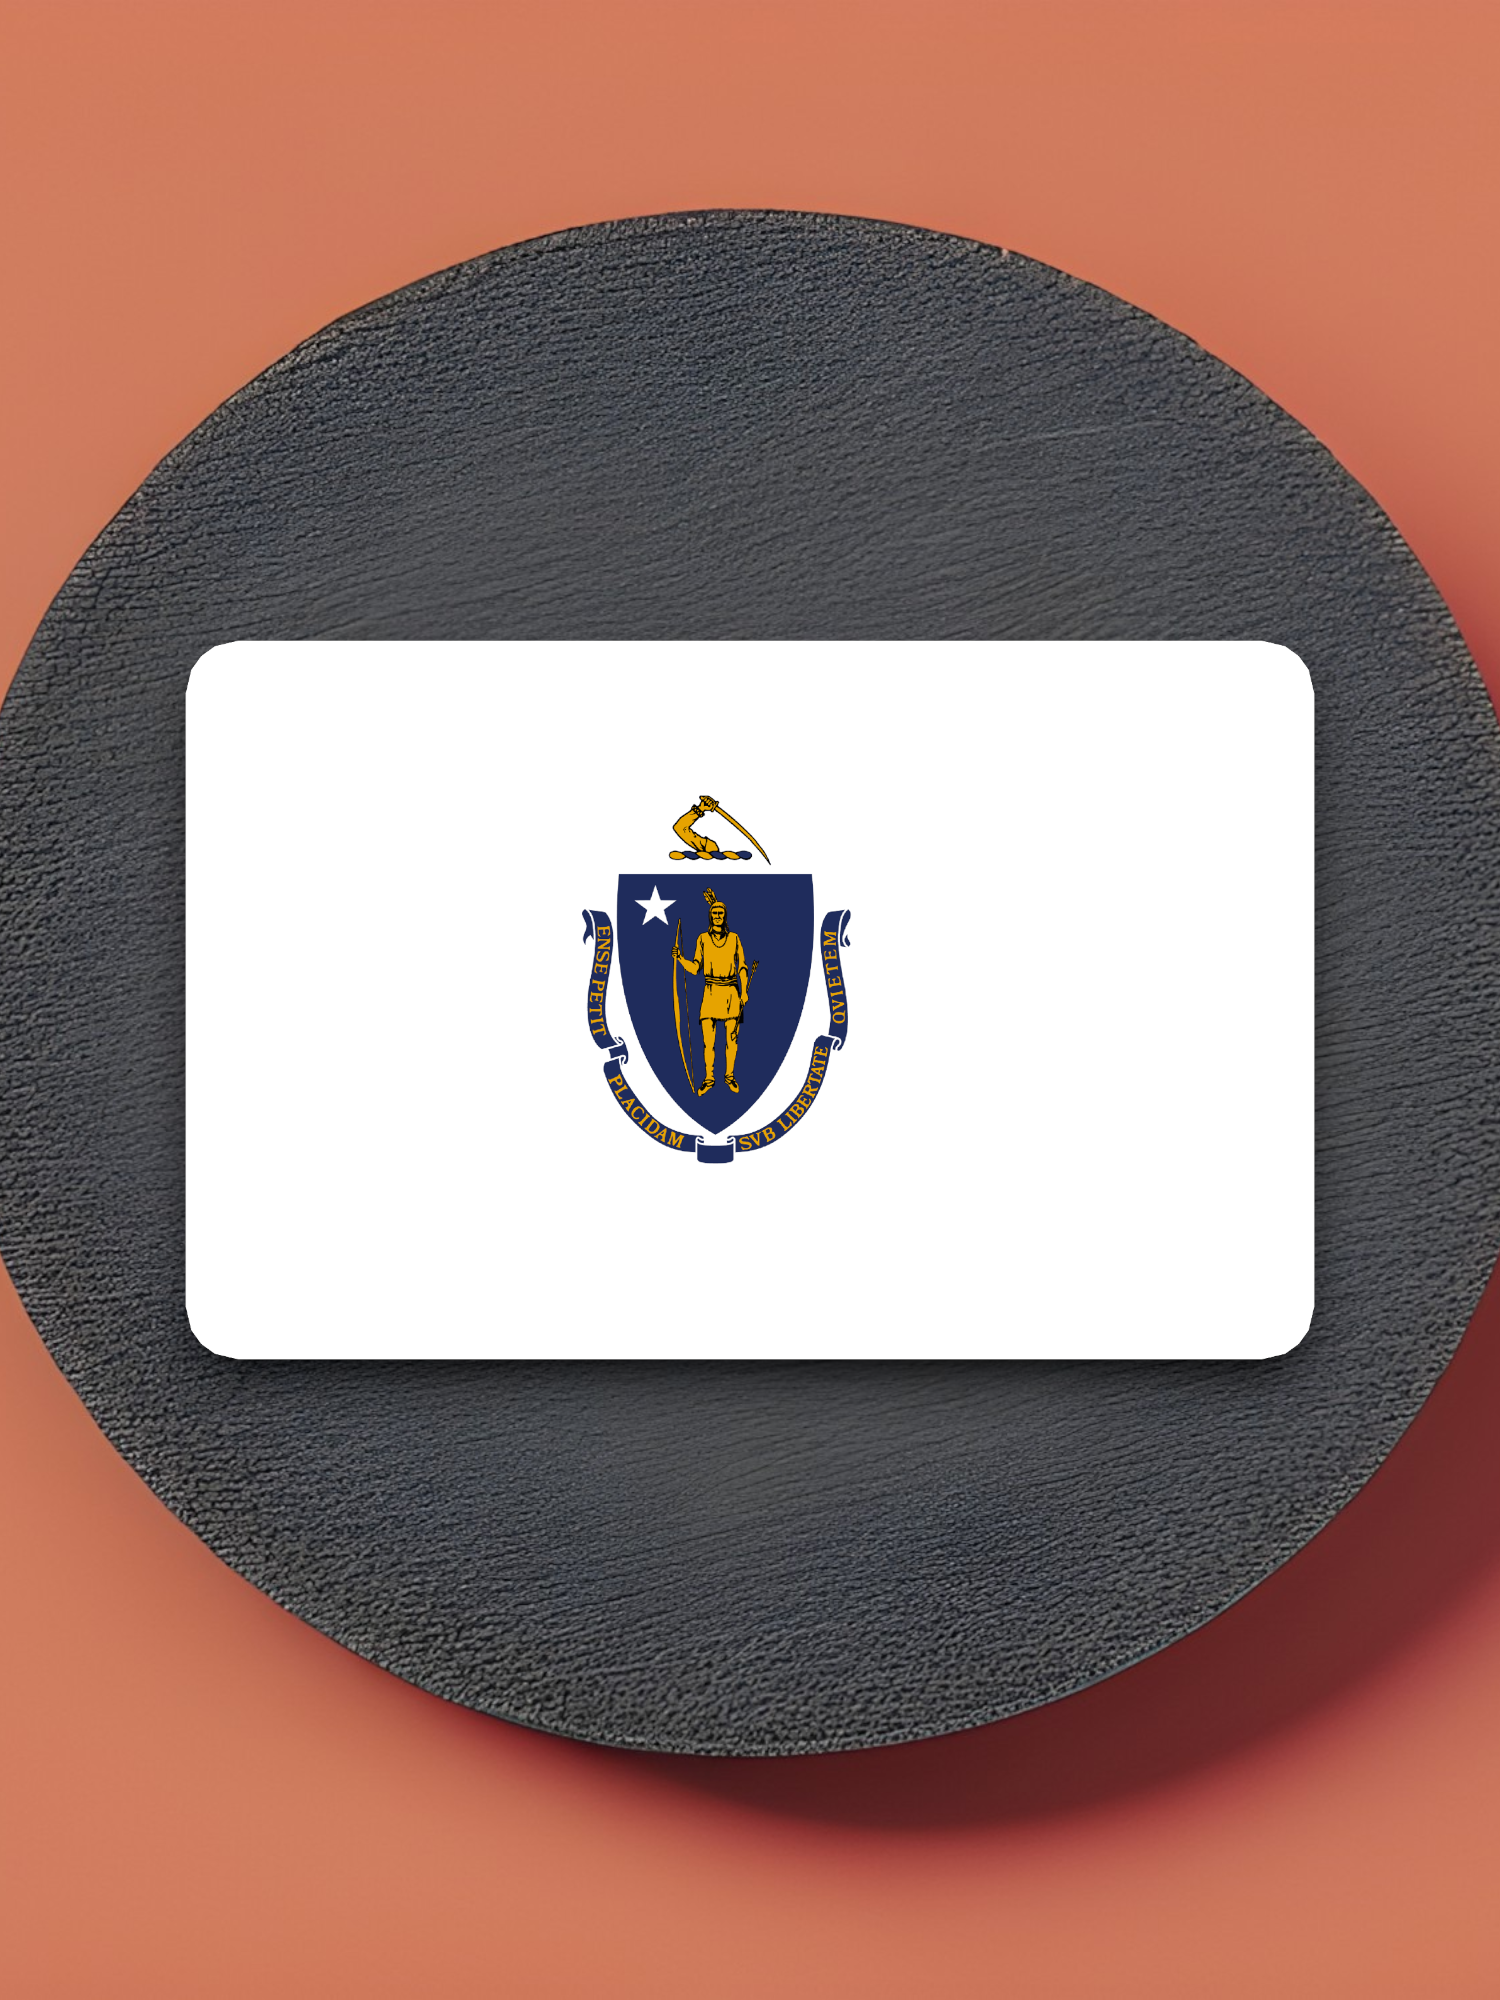 Massachusetts Flag - State Flag Sticker